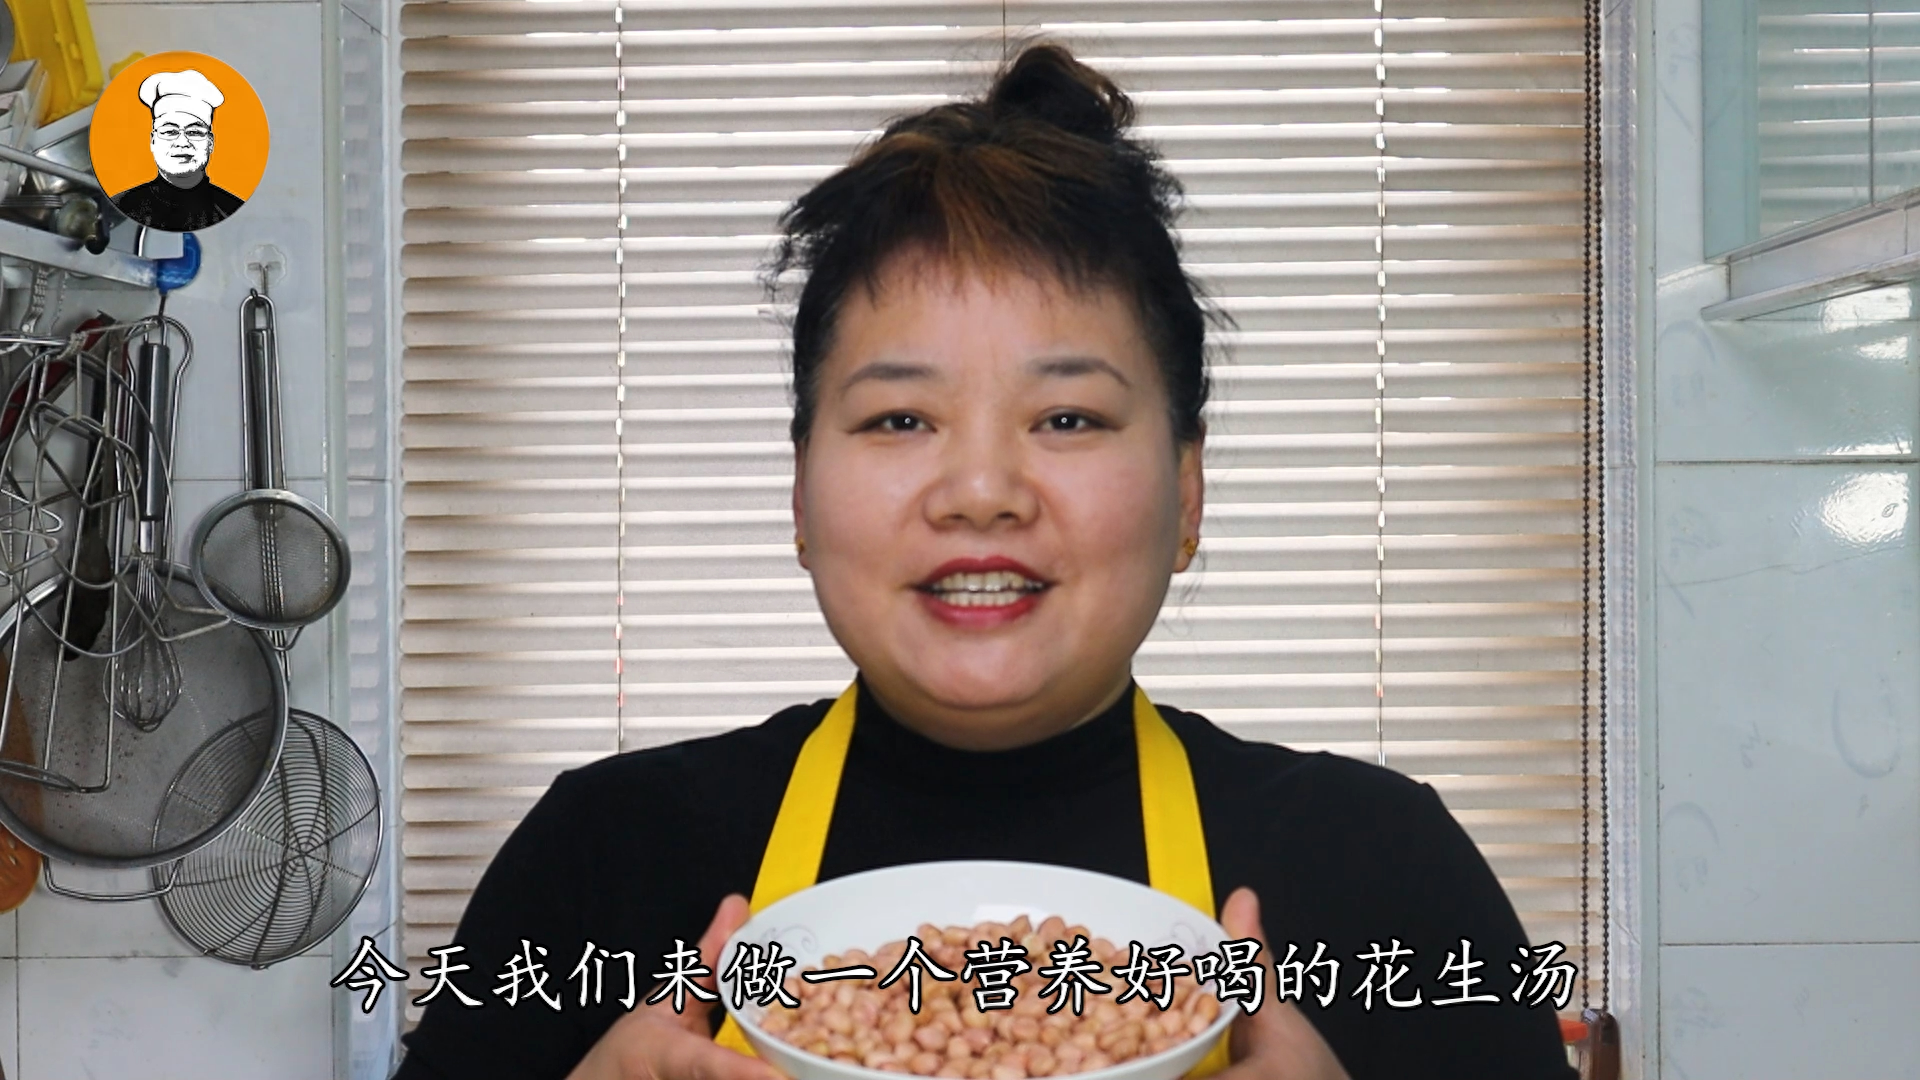 大家好，这里是【刘一手美食】，关注老刘，每天分享一道好吃又实用的家常菜1、花生汤是福建省闽南地区的一道特色传统名点，属于闽菜系2、 今天刘嫂就来分享一下“紫薯芋头花生